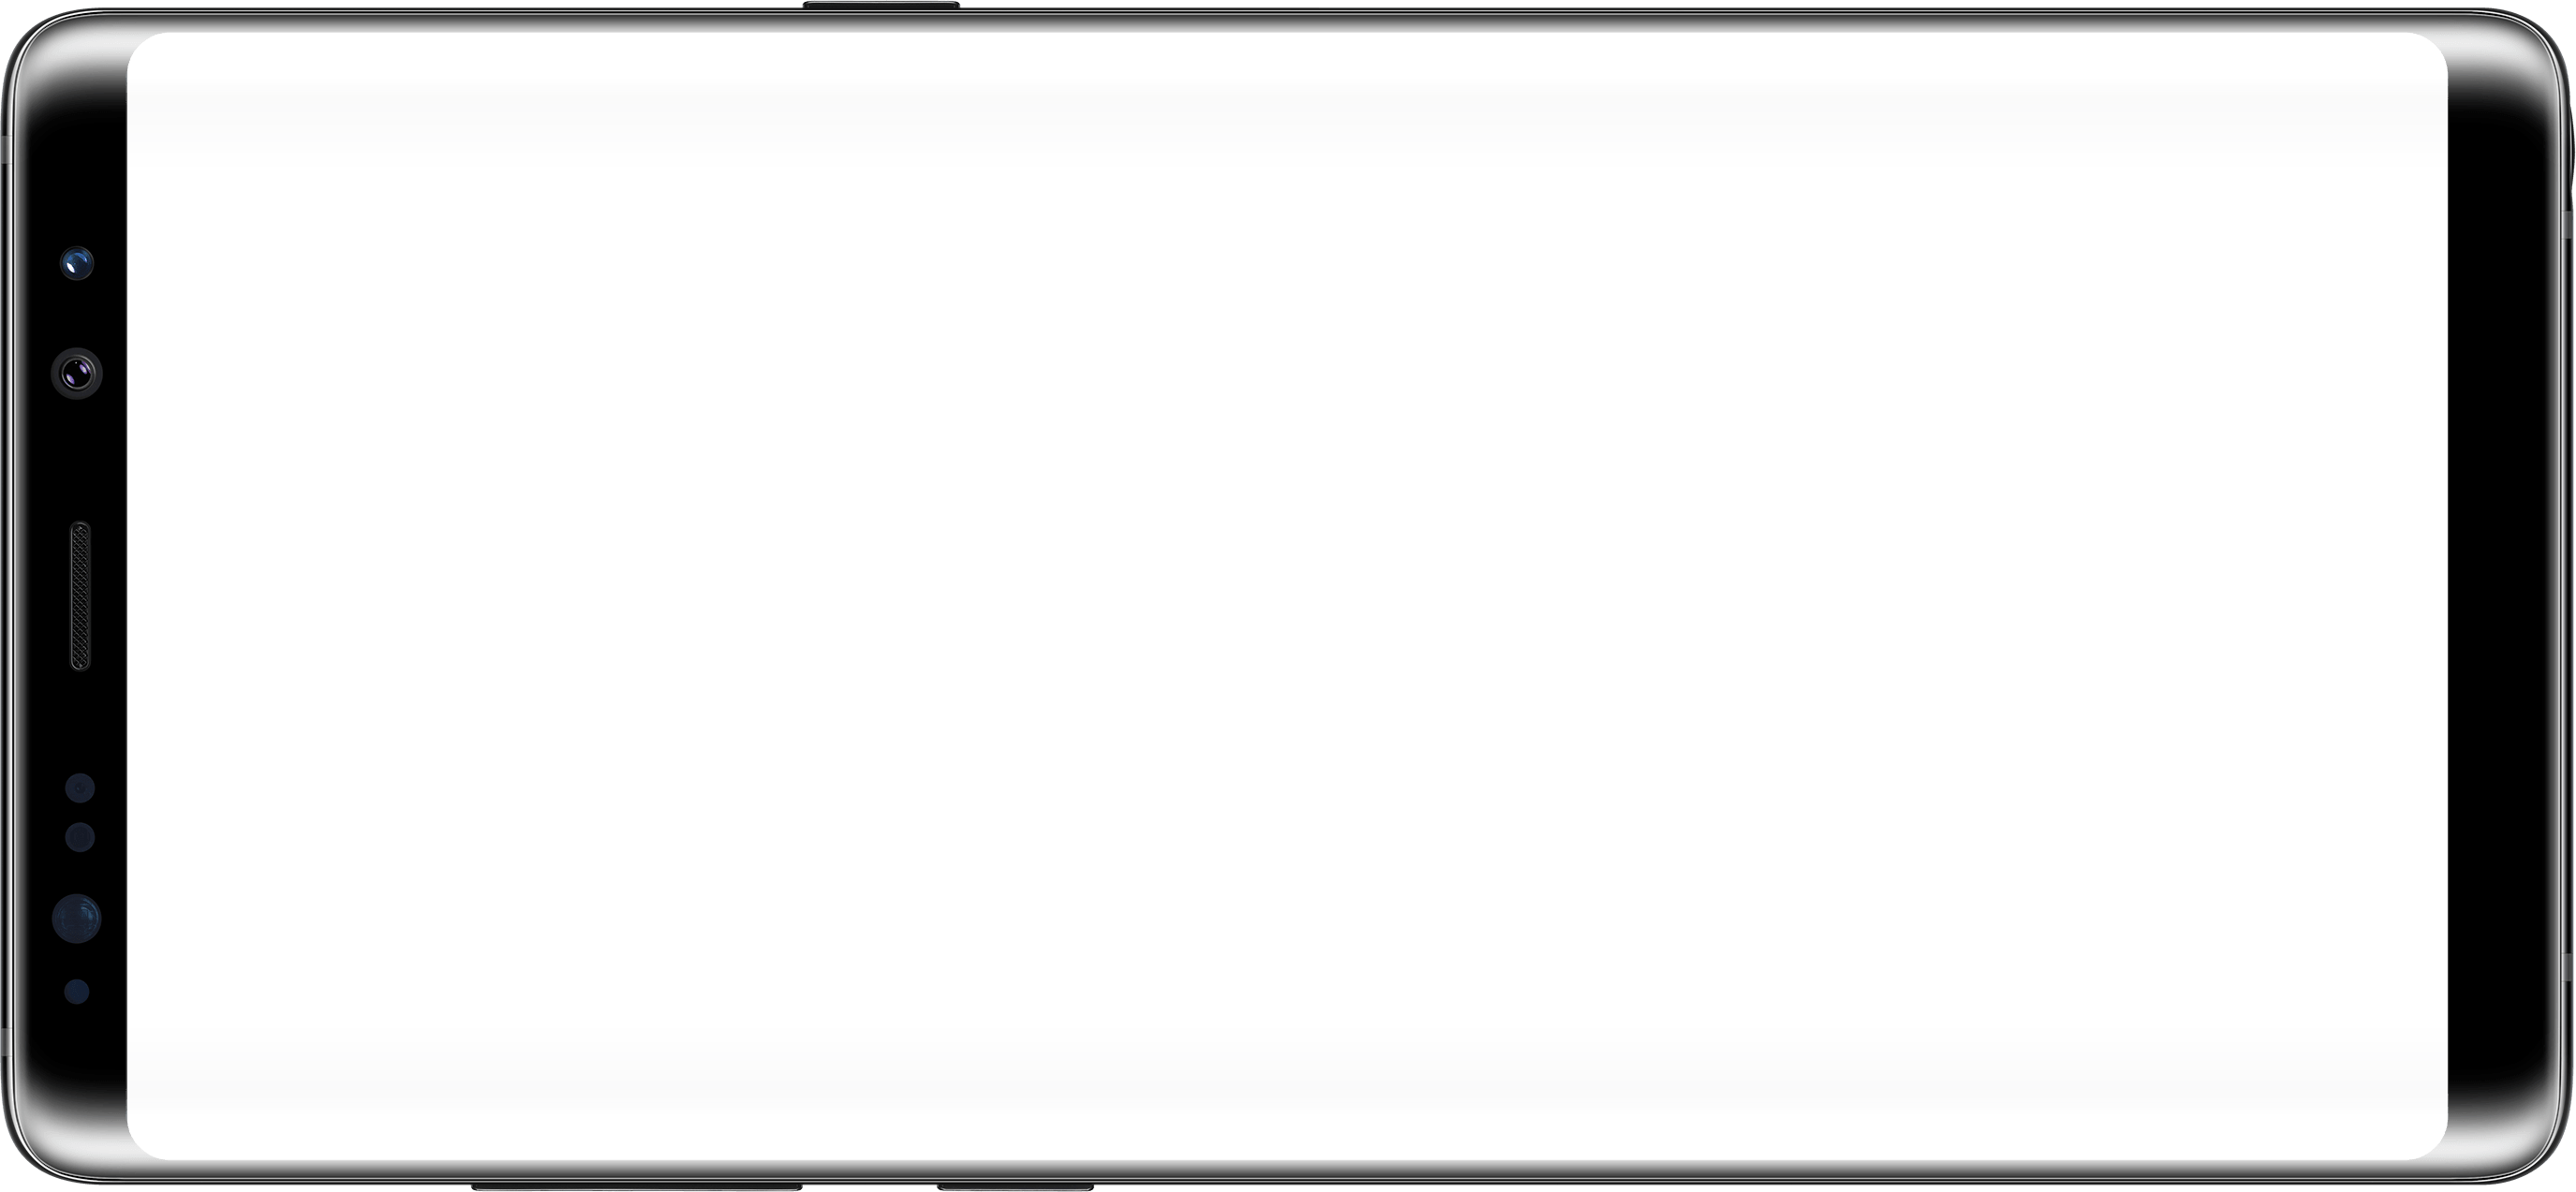 هاتف Samsung Galaxy Note 8 سامسونج الخليج